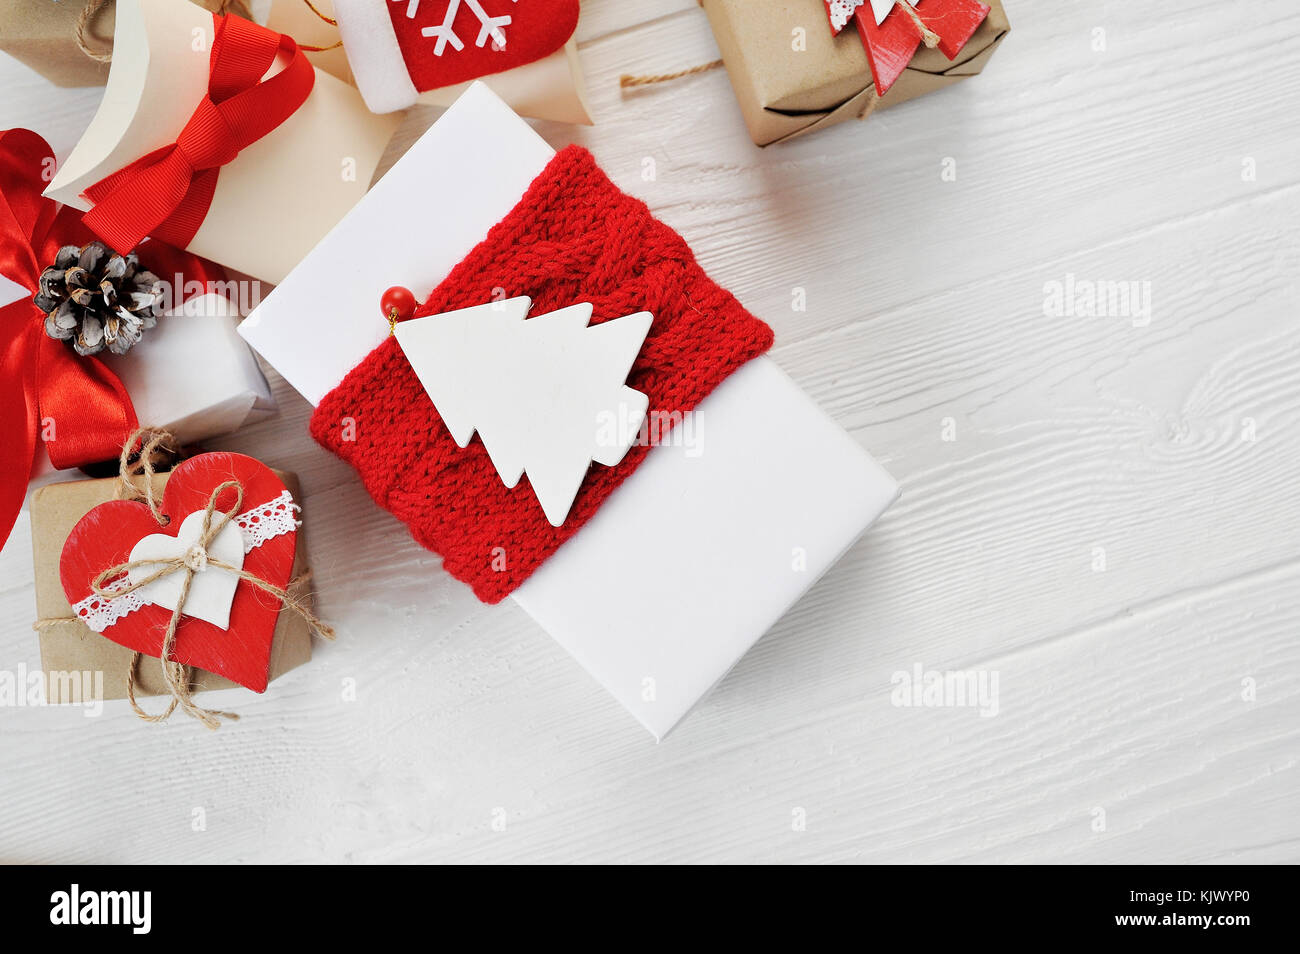 Natale regalo Scatole decorate con archetti in rosso su bianco sullo sfondo di legno. flat laico, top view photo mockup Foto Stock